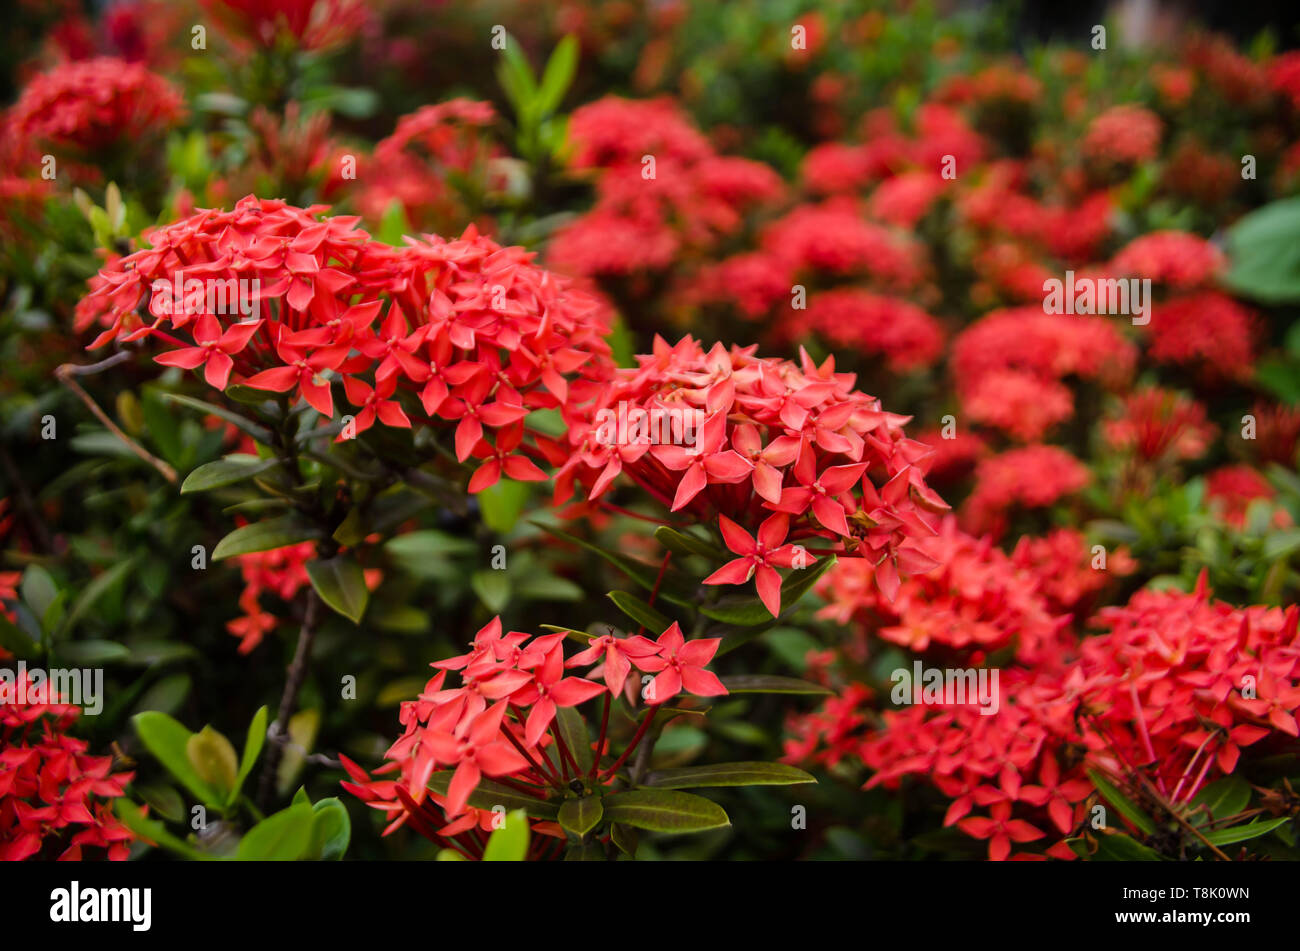 Ixora coccinea fleurs dans fulll bloom dans un jardin Banque D'Images